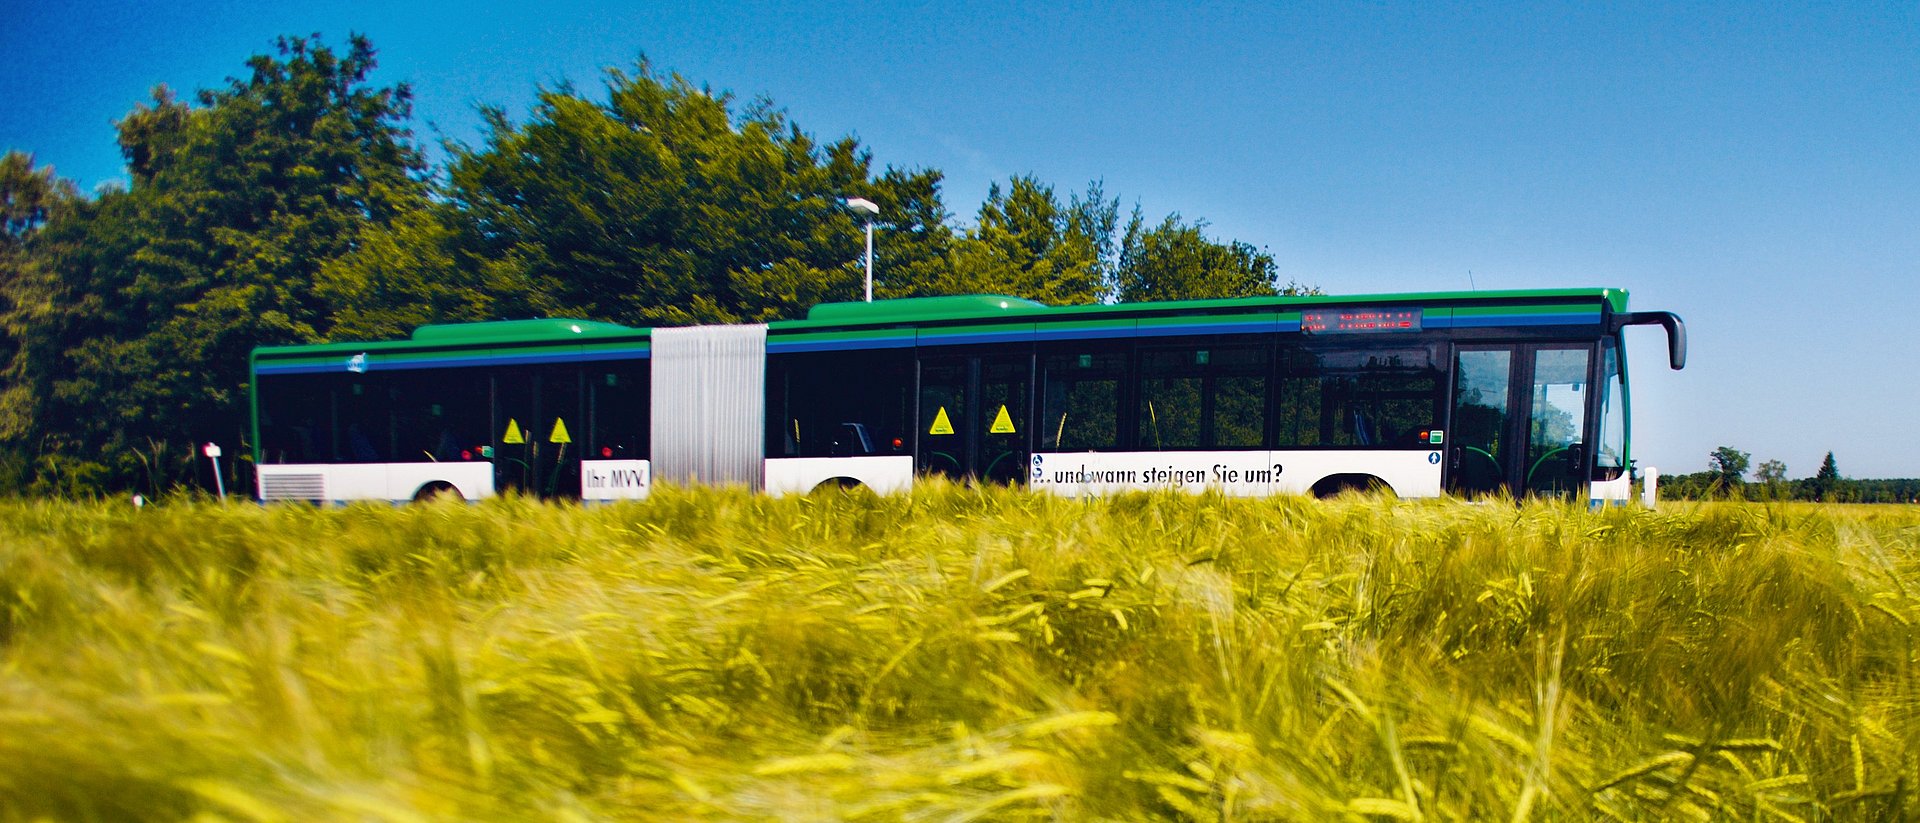 Die Expressbuslinie X660 verbindet den Forschungscampus Garching direkt mit dem Freisinger Campus der TUM.